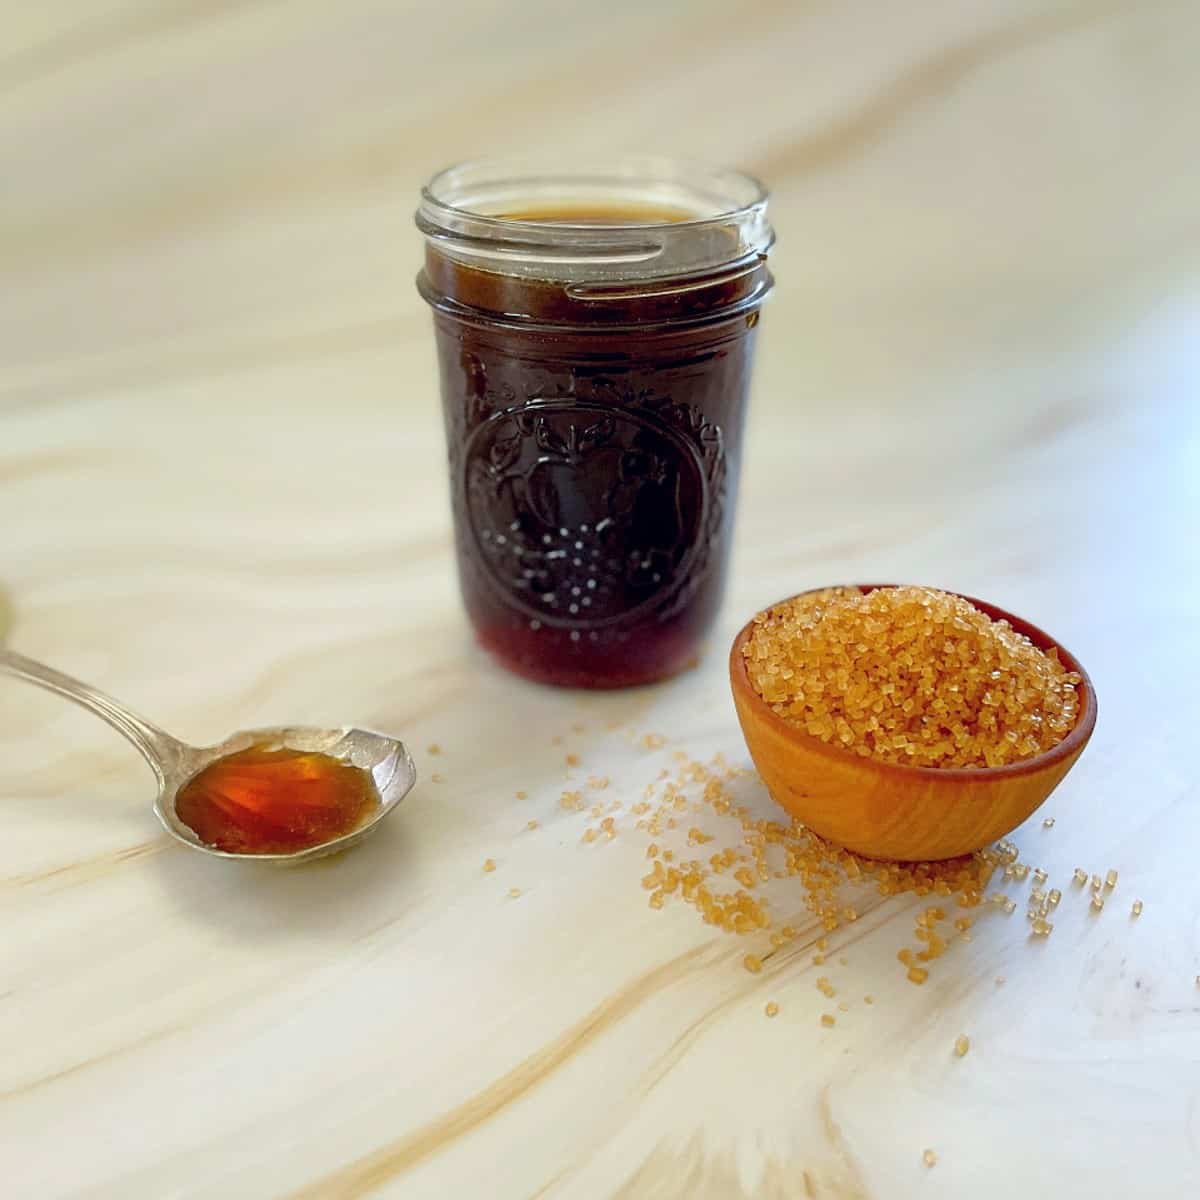 rich demerara syrup in a jar.